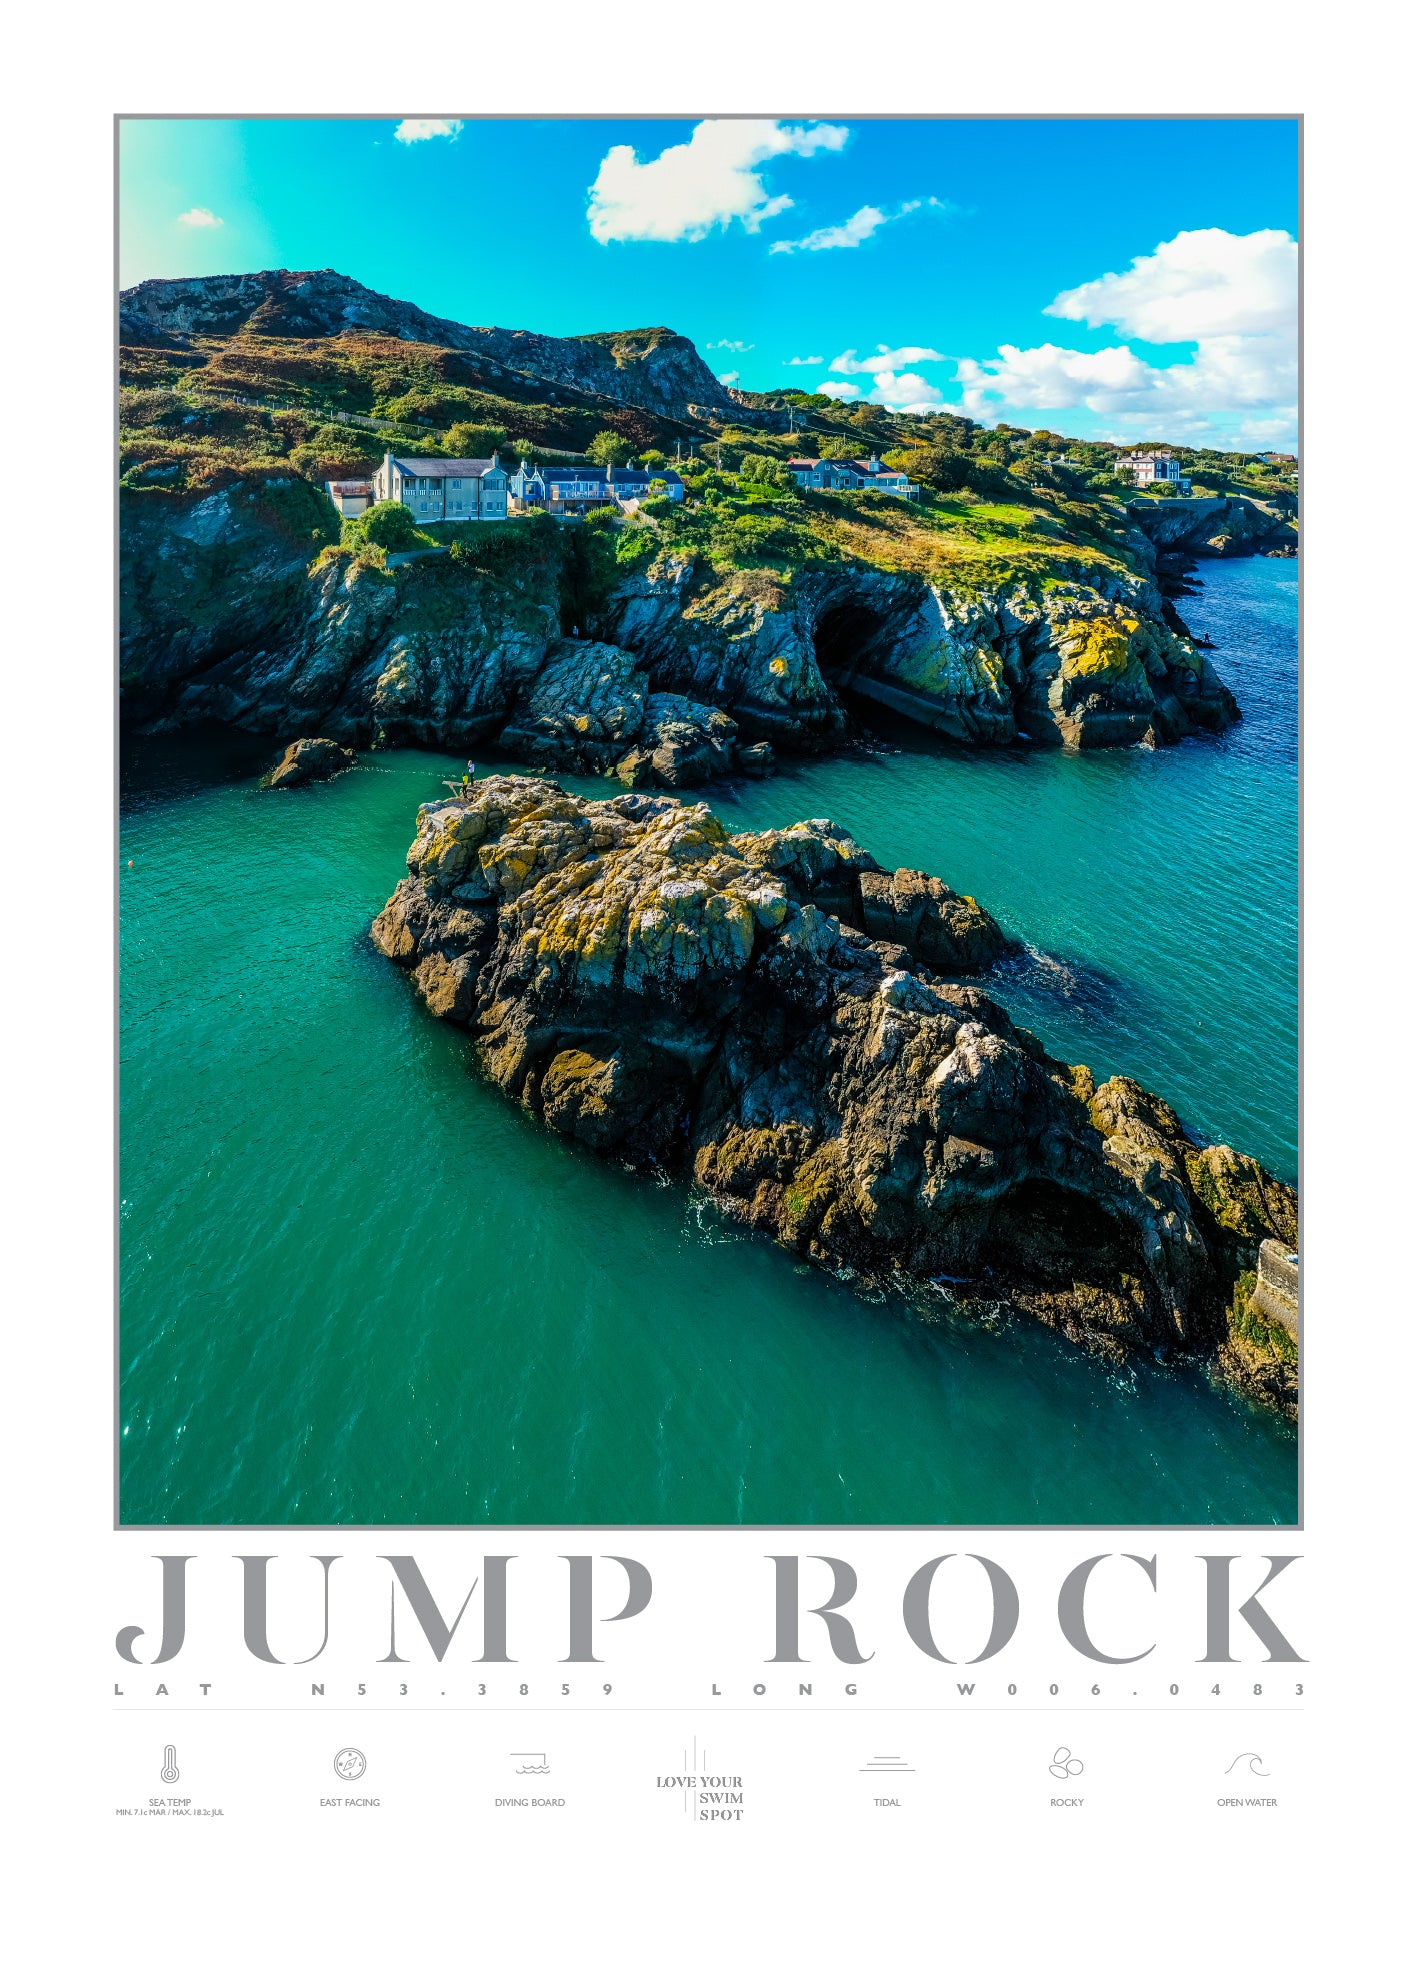 JUMP ROCK HOWTH CO DUBLIN